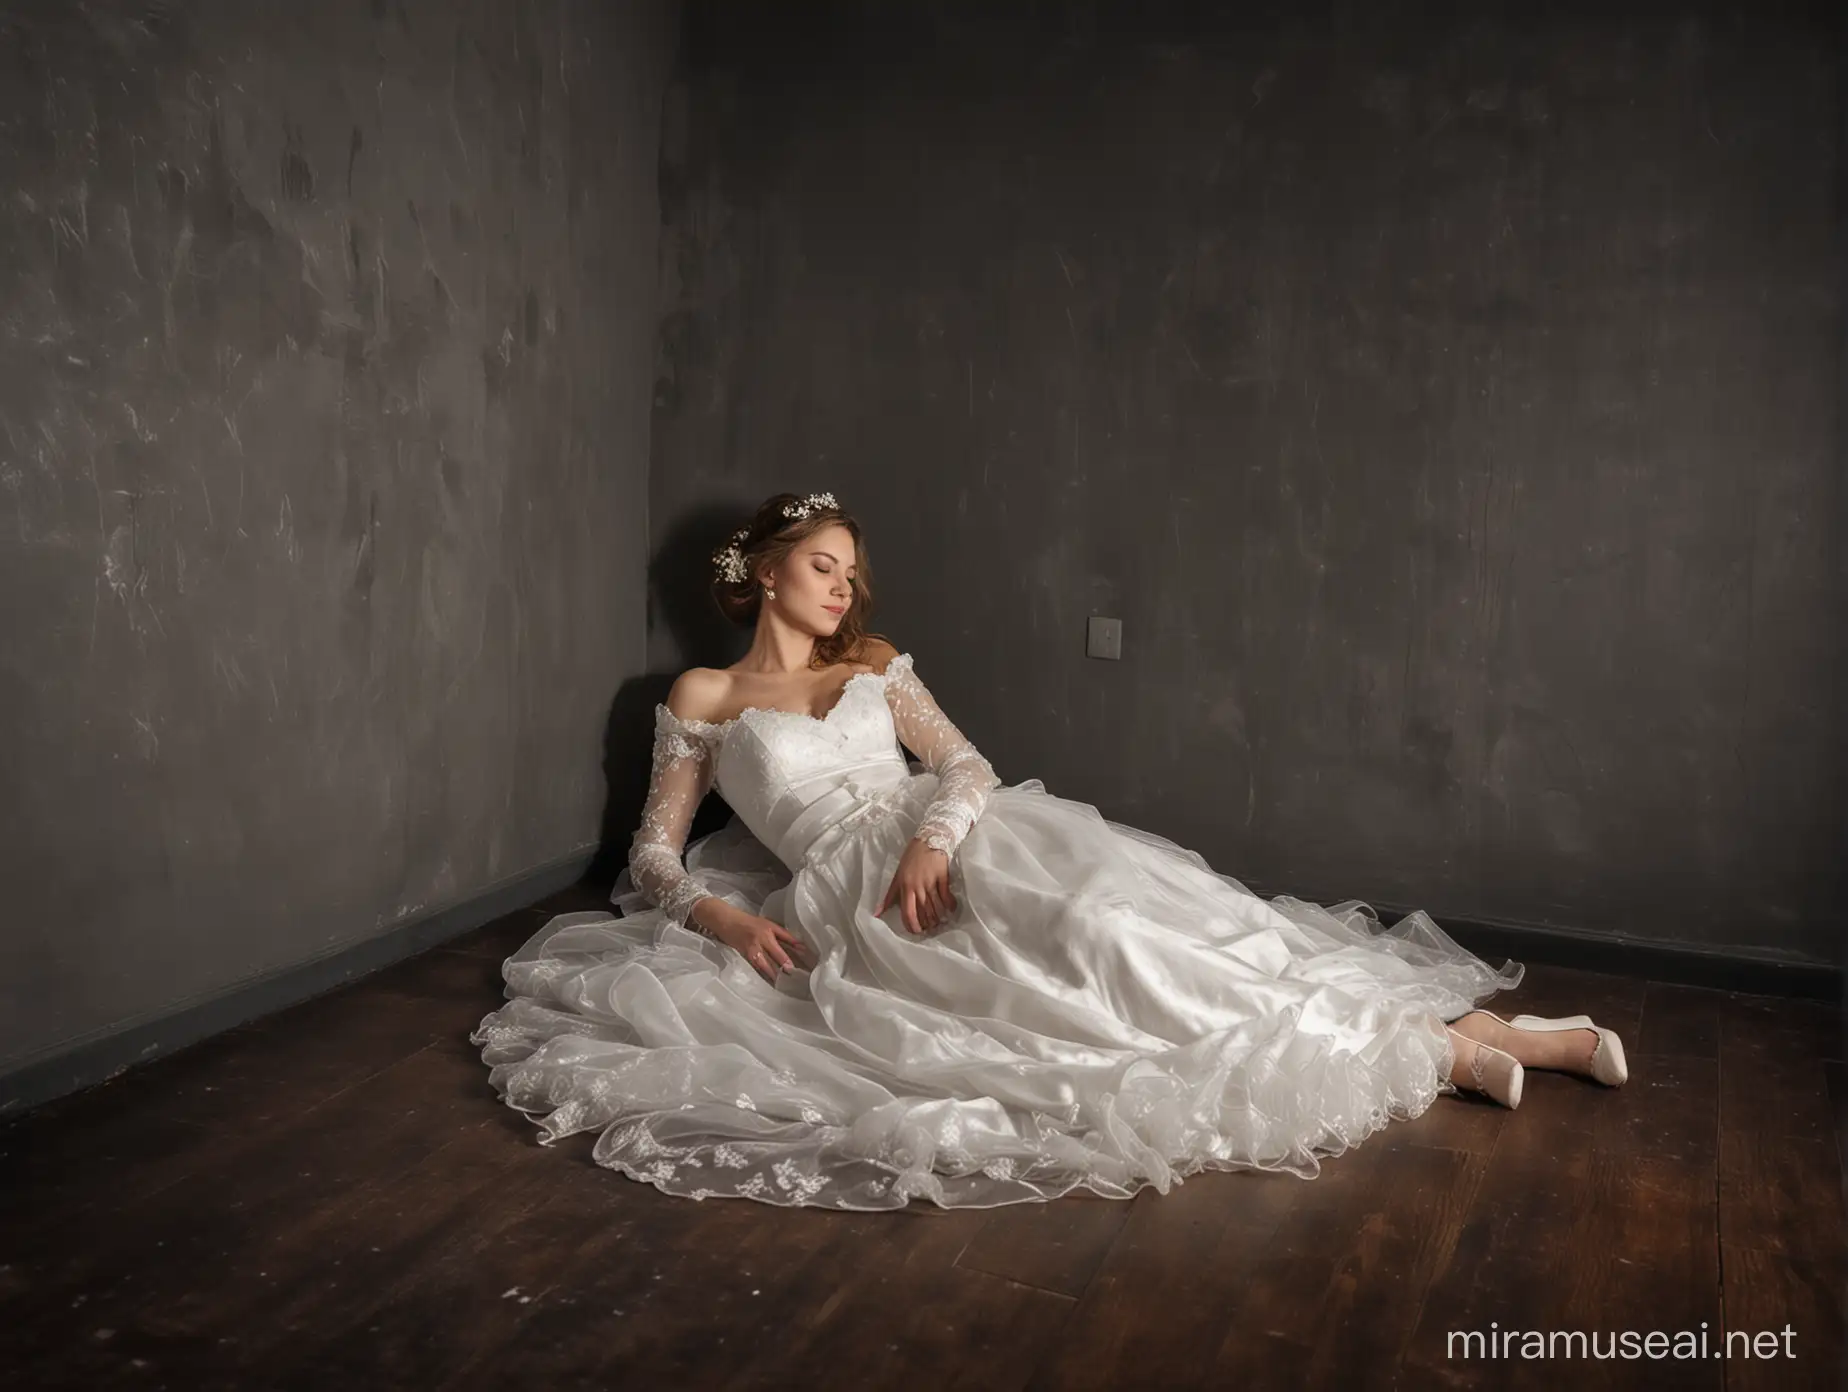 una mujer vestida de novia dormida en el piso de una habitación oscura en la noche